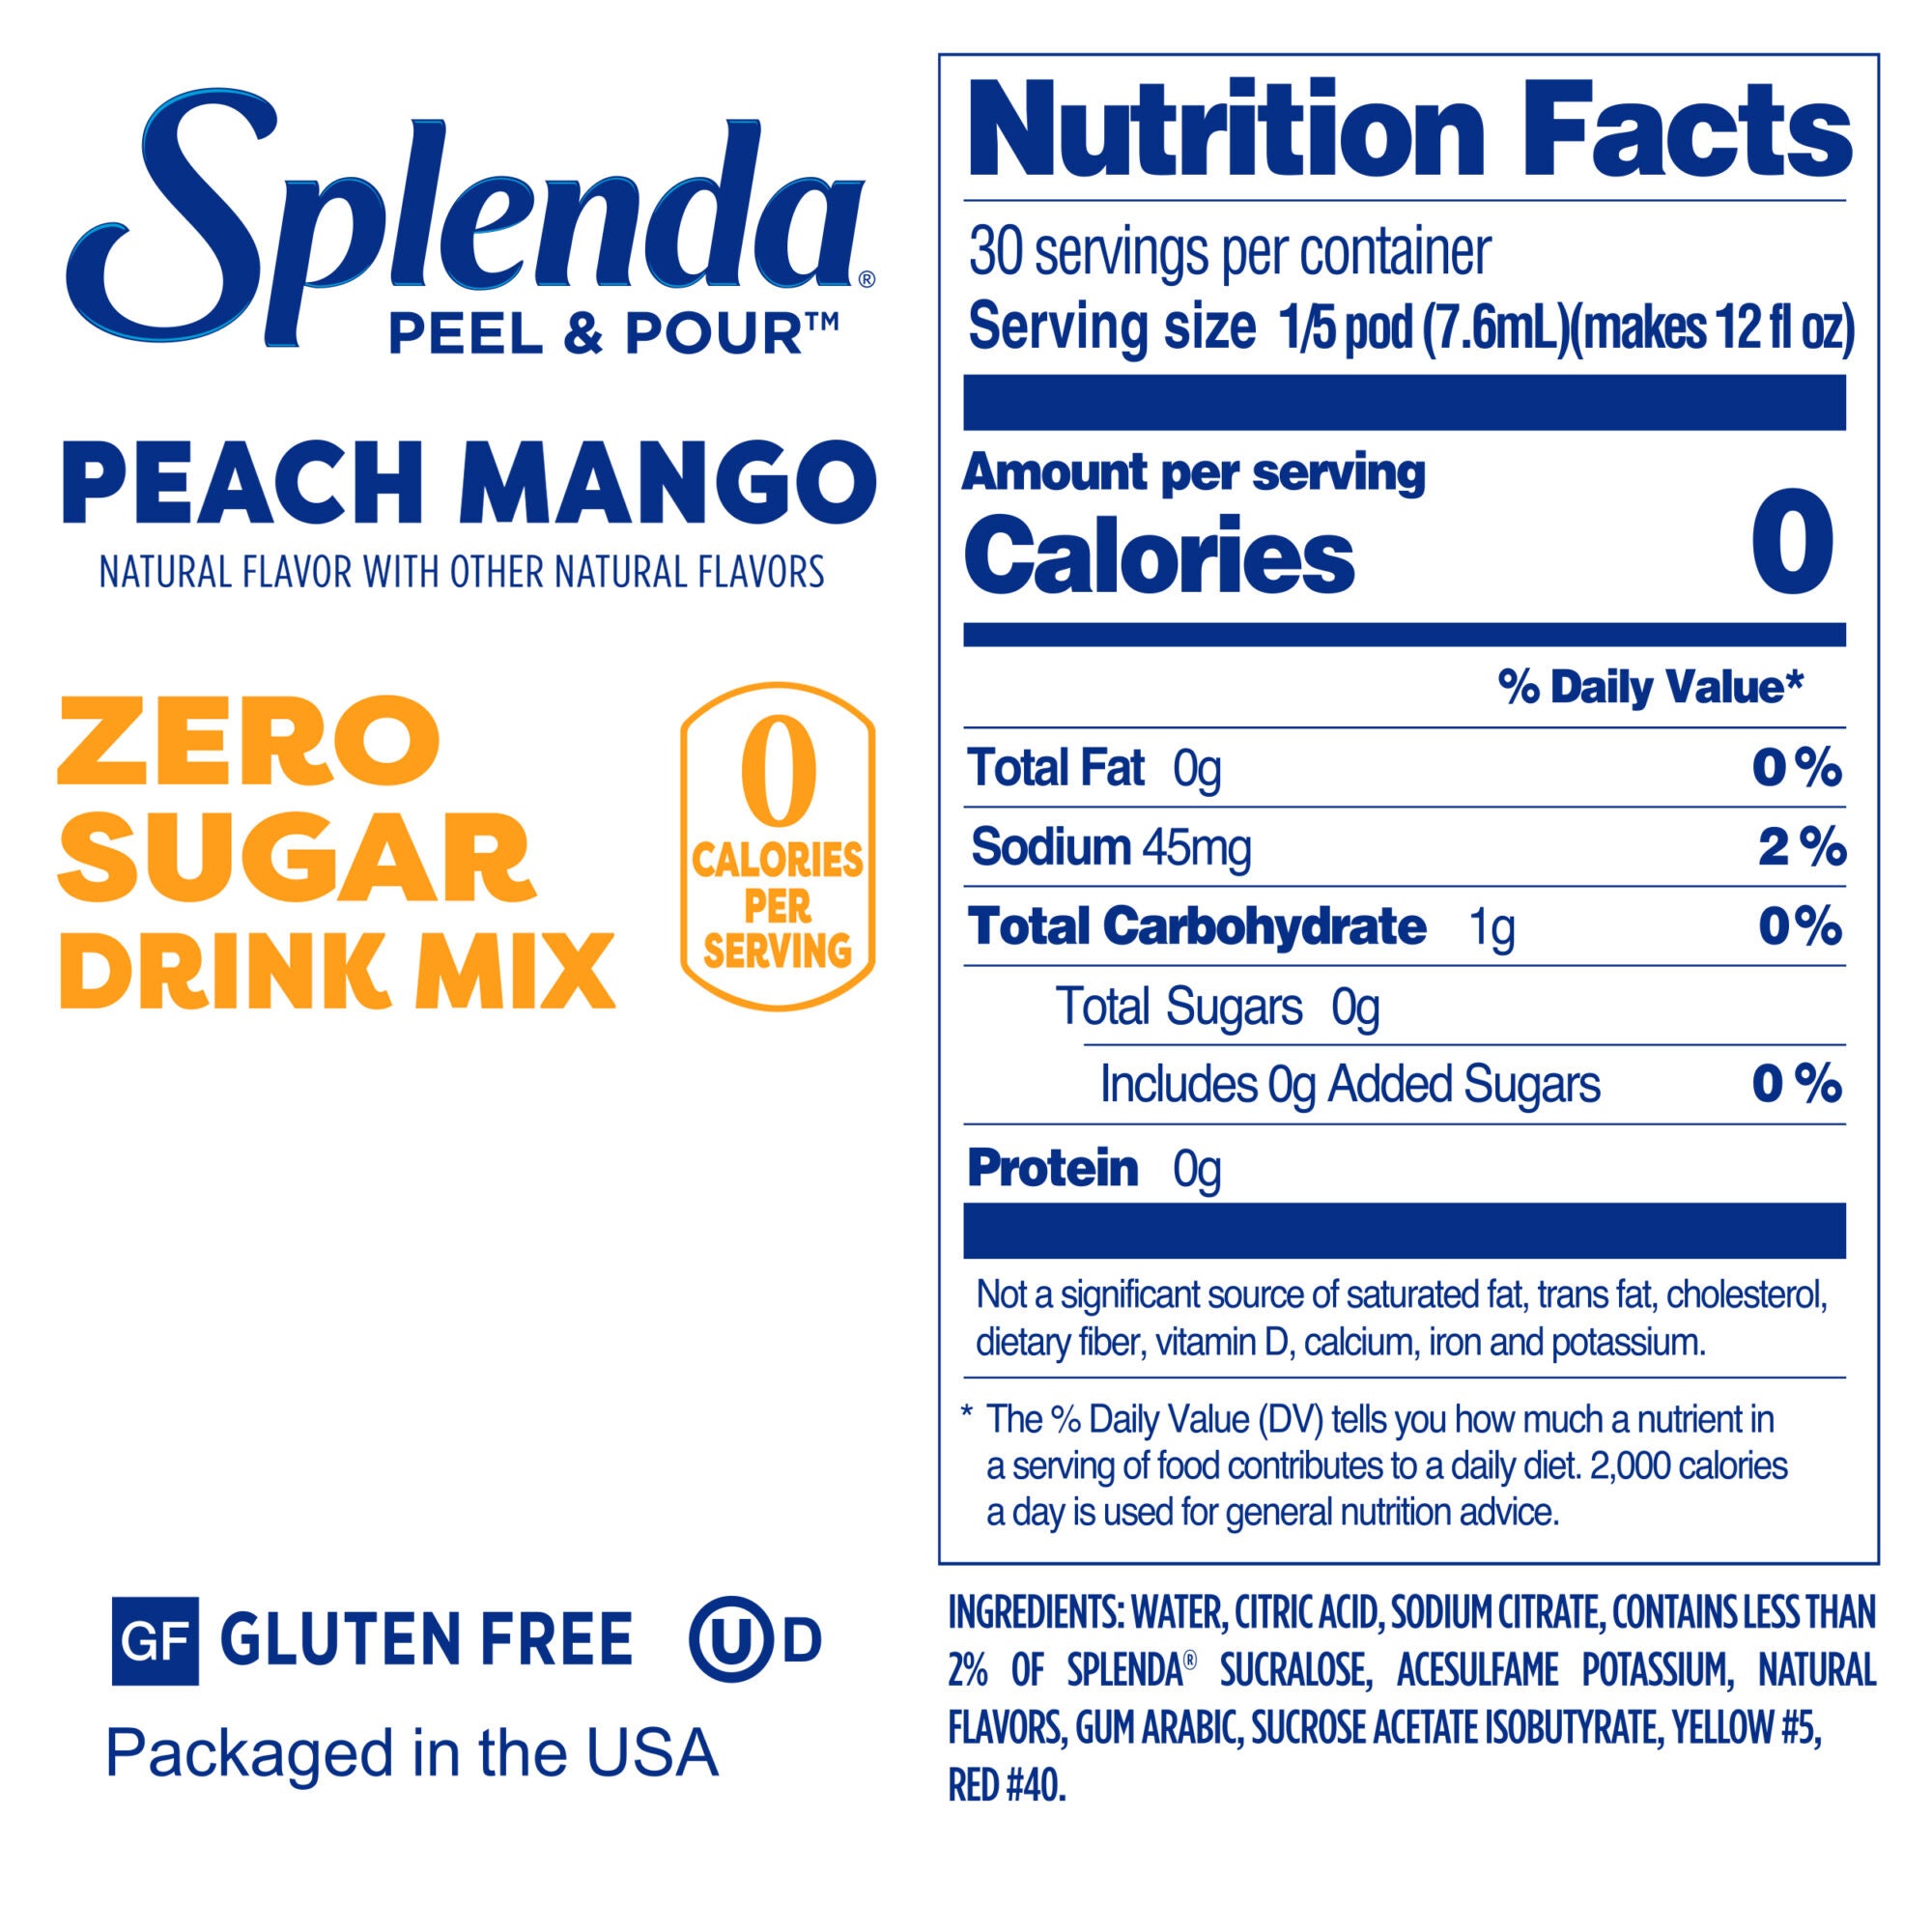 Splenda Mezcla de Bebidas sin Azúcar Peel & Pour, Melocotón y Mango - Etiqueta con datos de nutrición